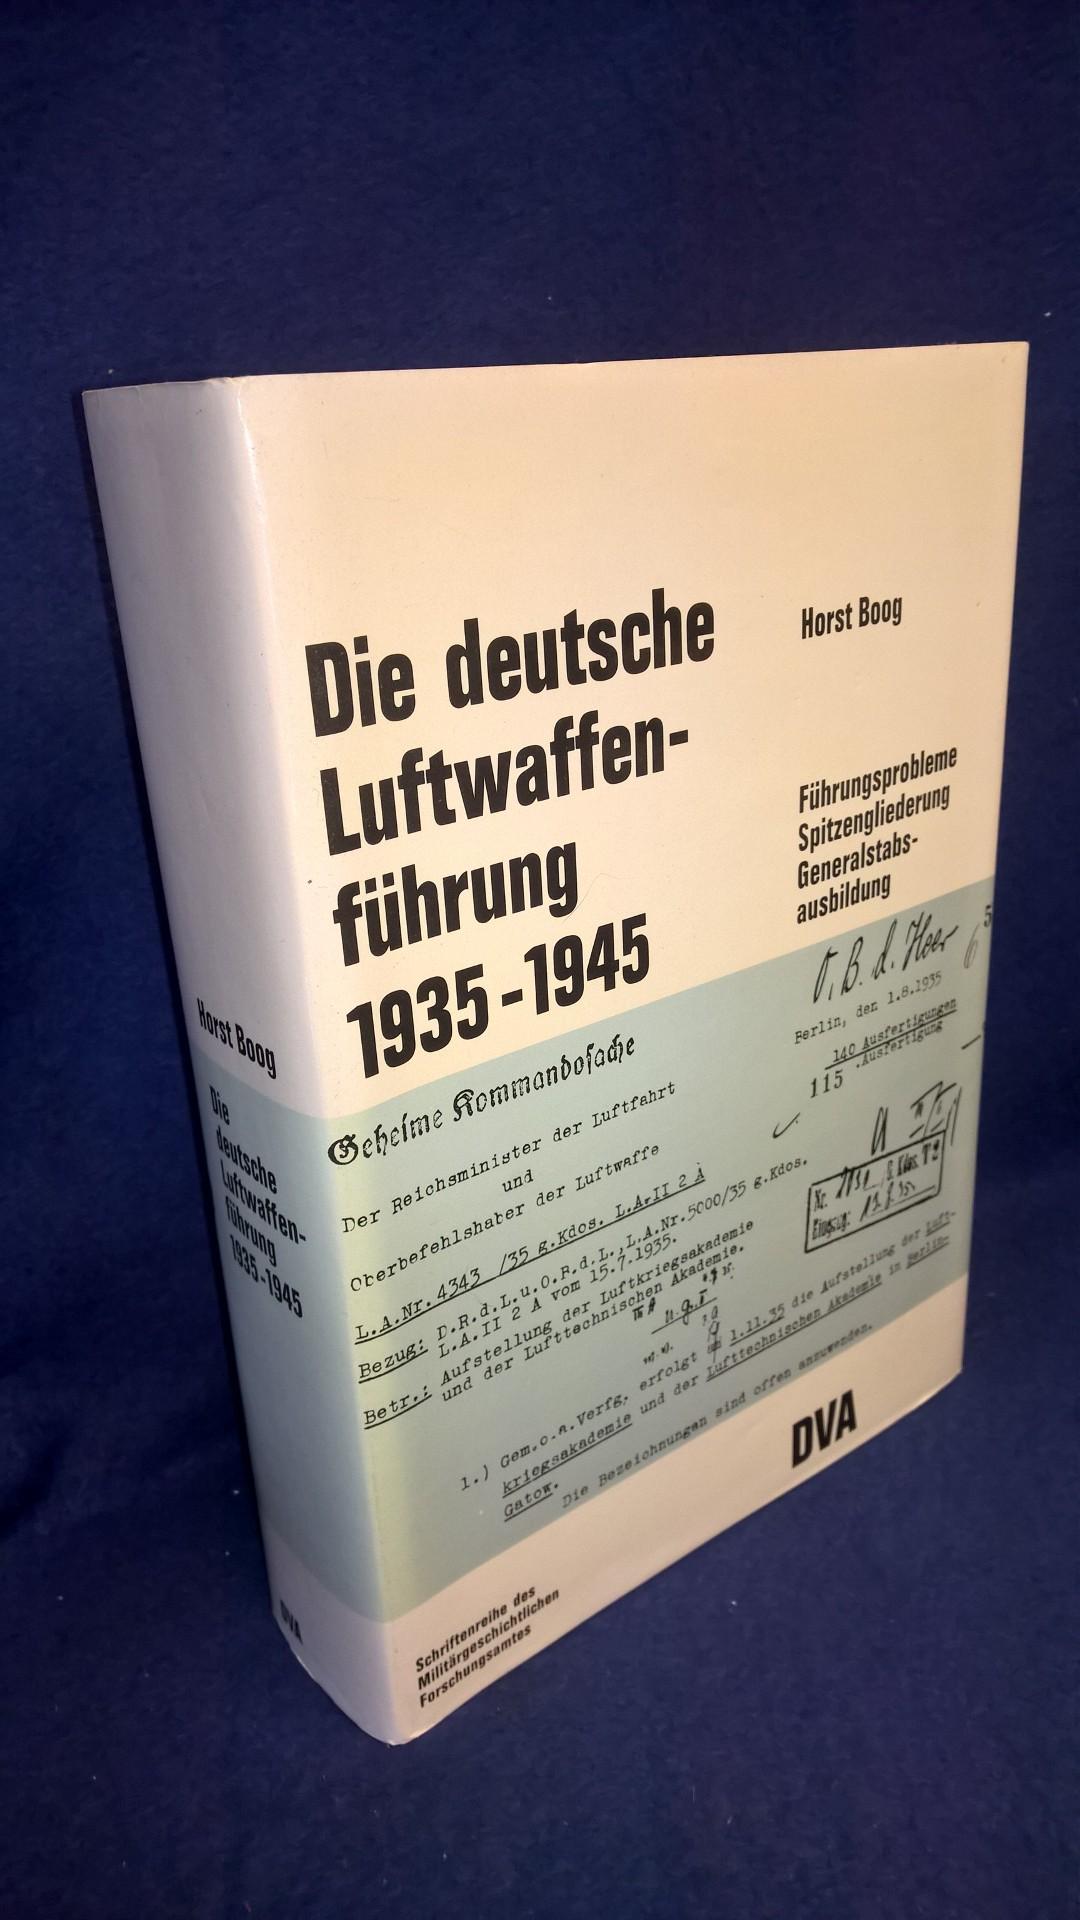 Beiträge zur Militär- und Kriegsgeschichte Band 21: Die Deutsche Luftwaffenführung 1935 - 1945. Führungsprobleme, Spitzengliederung und Generalstabsausbildung.